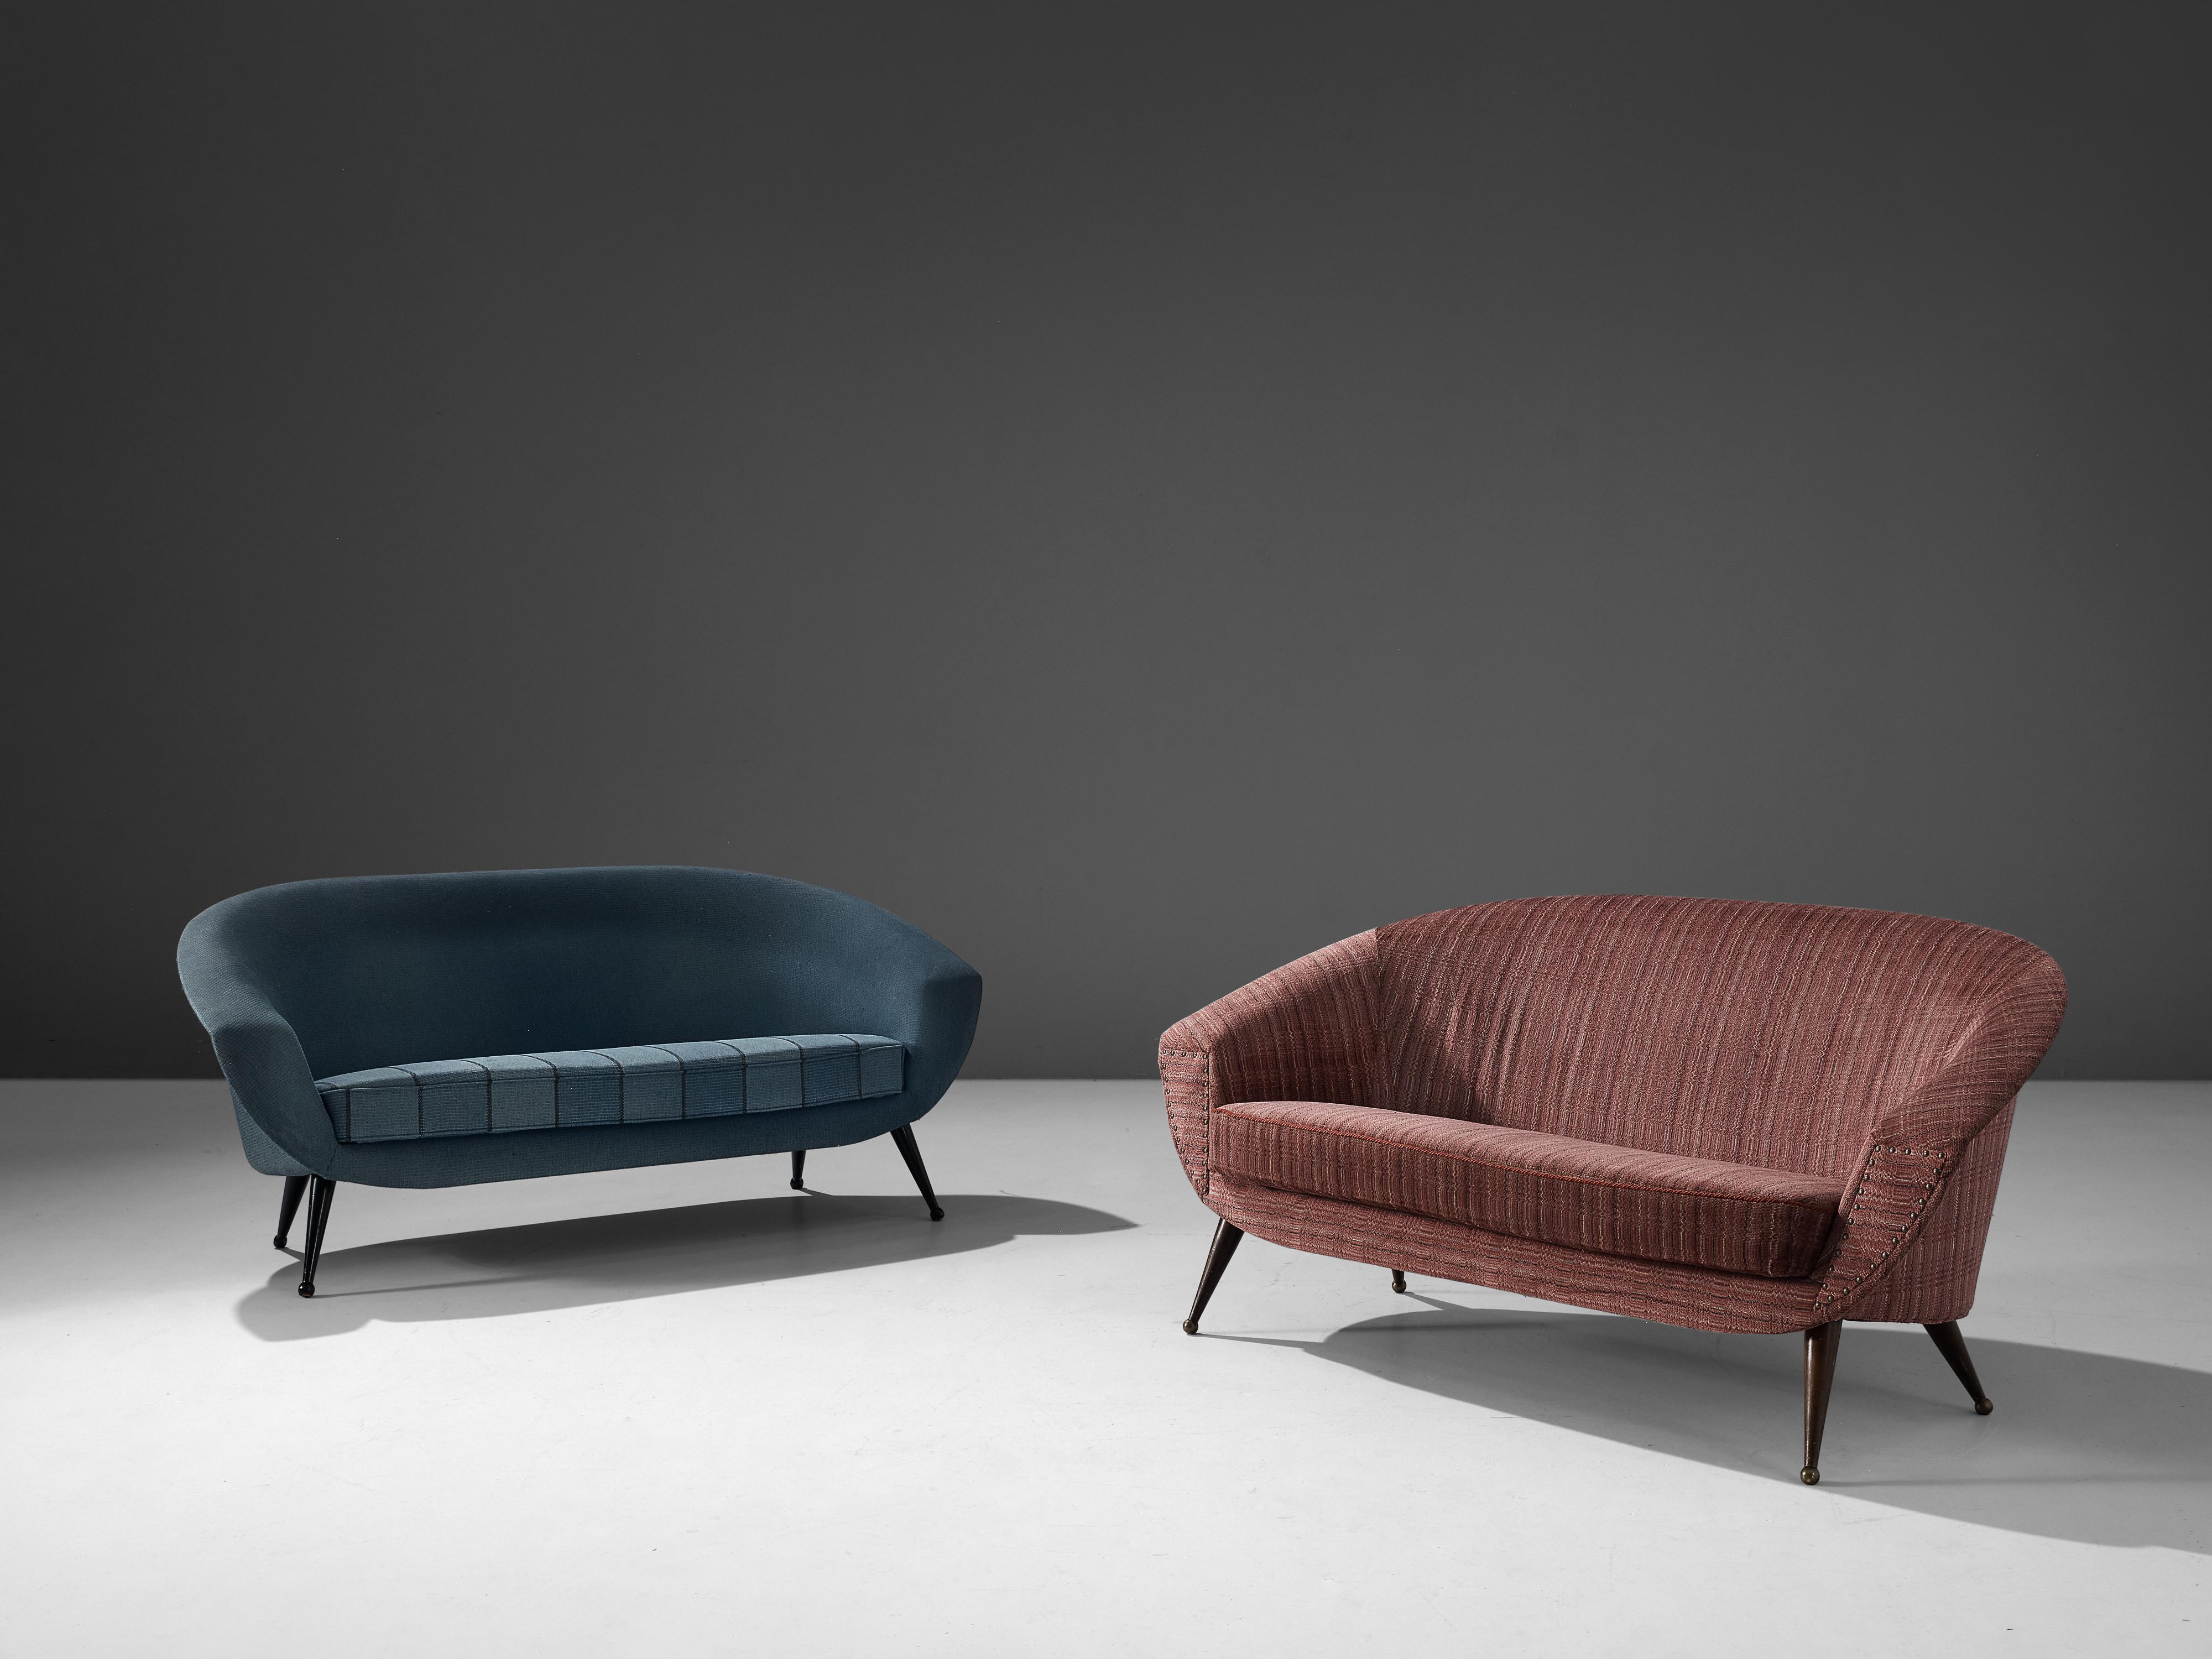 Folke Jansson 'Tellus' Sofa in Blue Upholstery 1